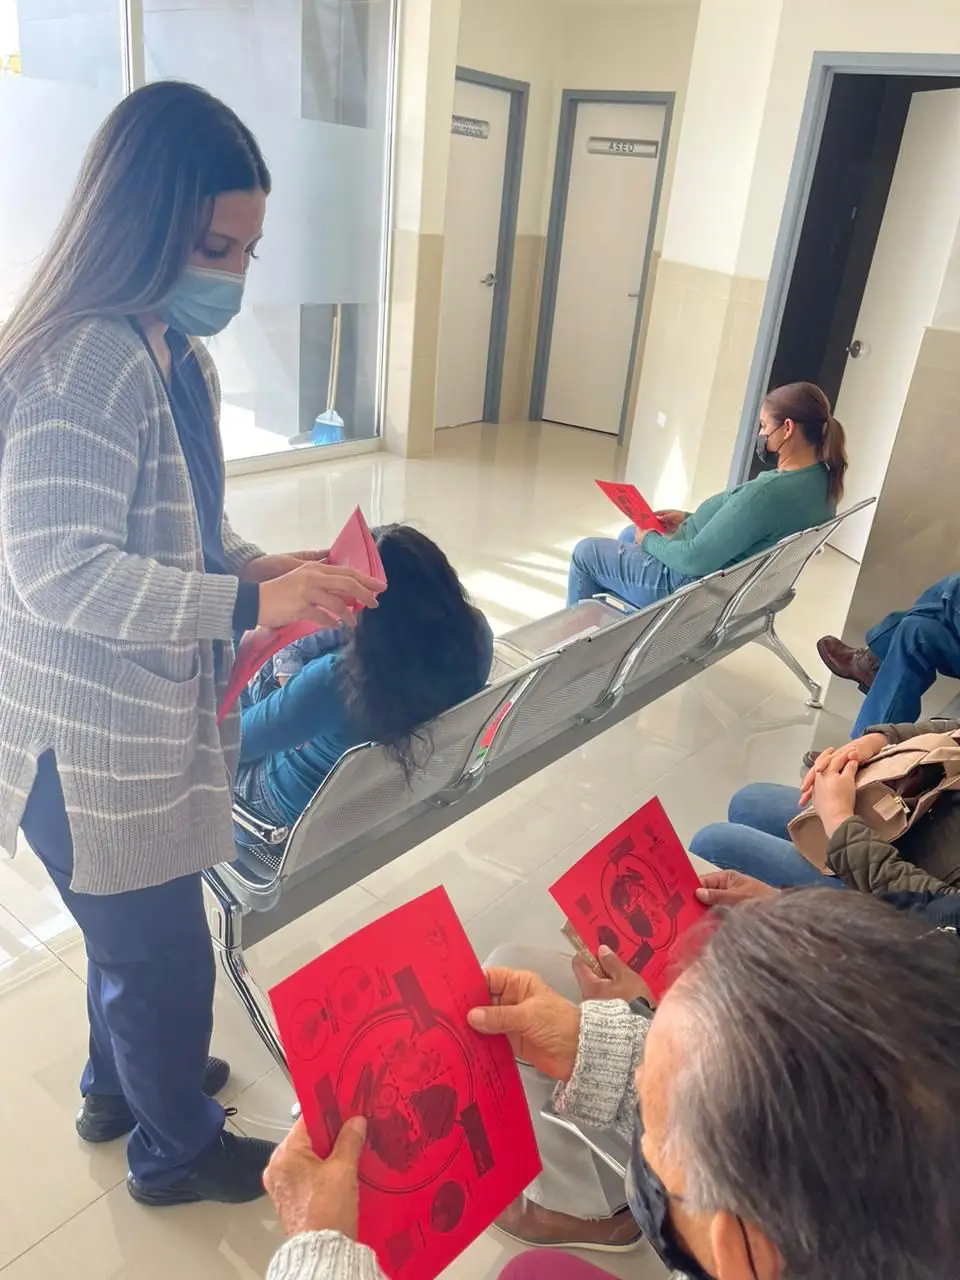 Reyna Isabel Gutierrez Pierce se encuentra en un centro de salud repartiendo hojas con una grafica de comida en el. Las presonas a quienes le esta dando las hojas son cuatro adultos mayores.